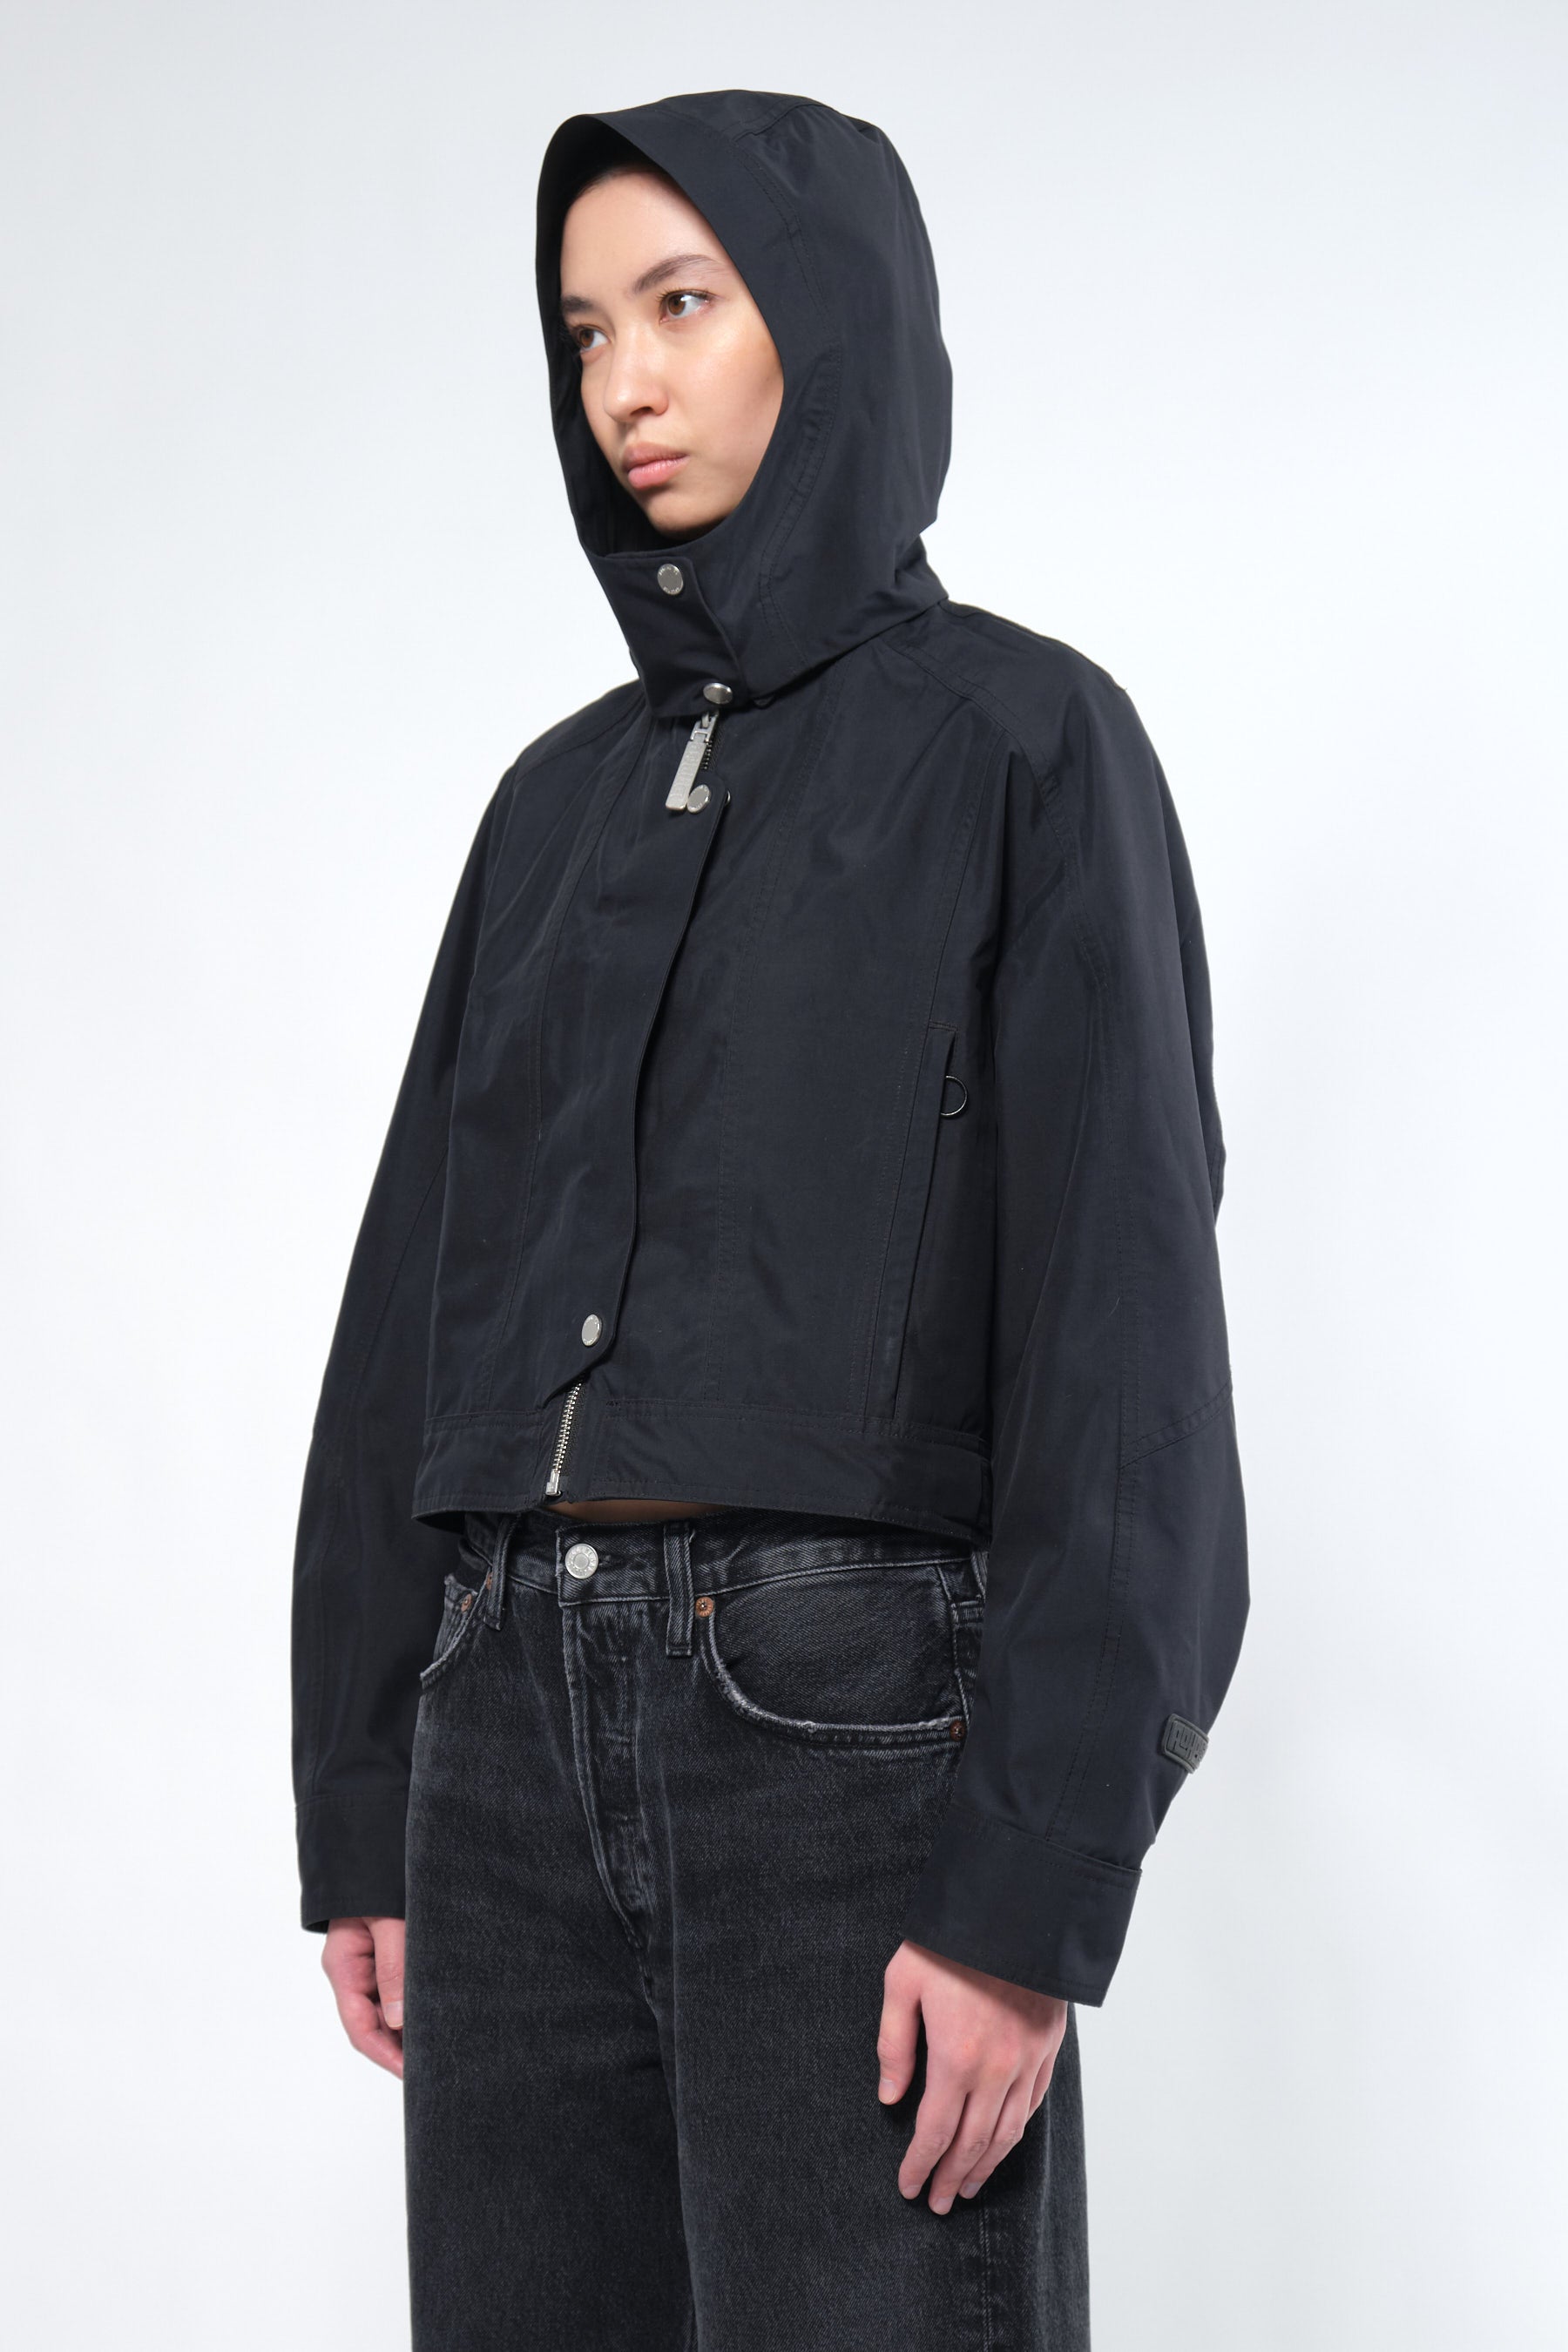  3L Black Waterproof Crop Rain Jacket with Hood - Adhere To  - 9